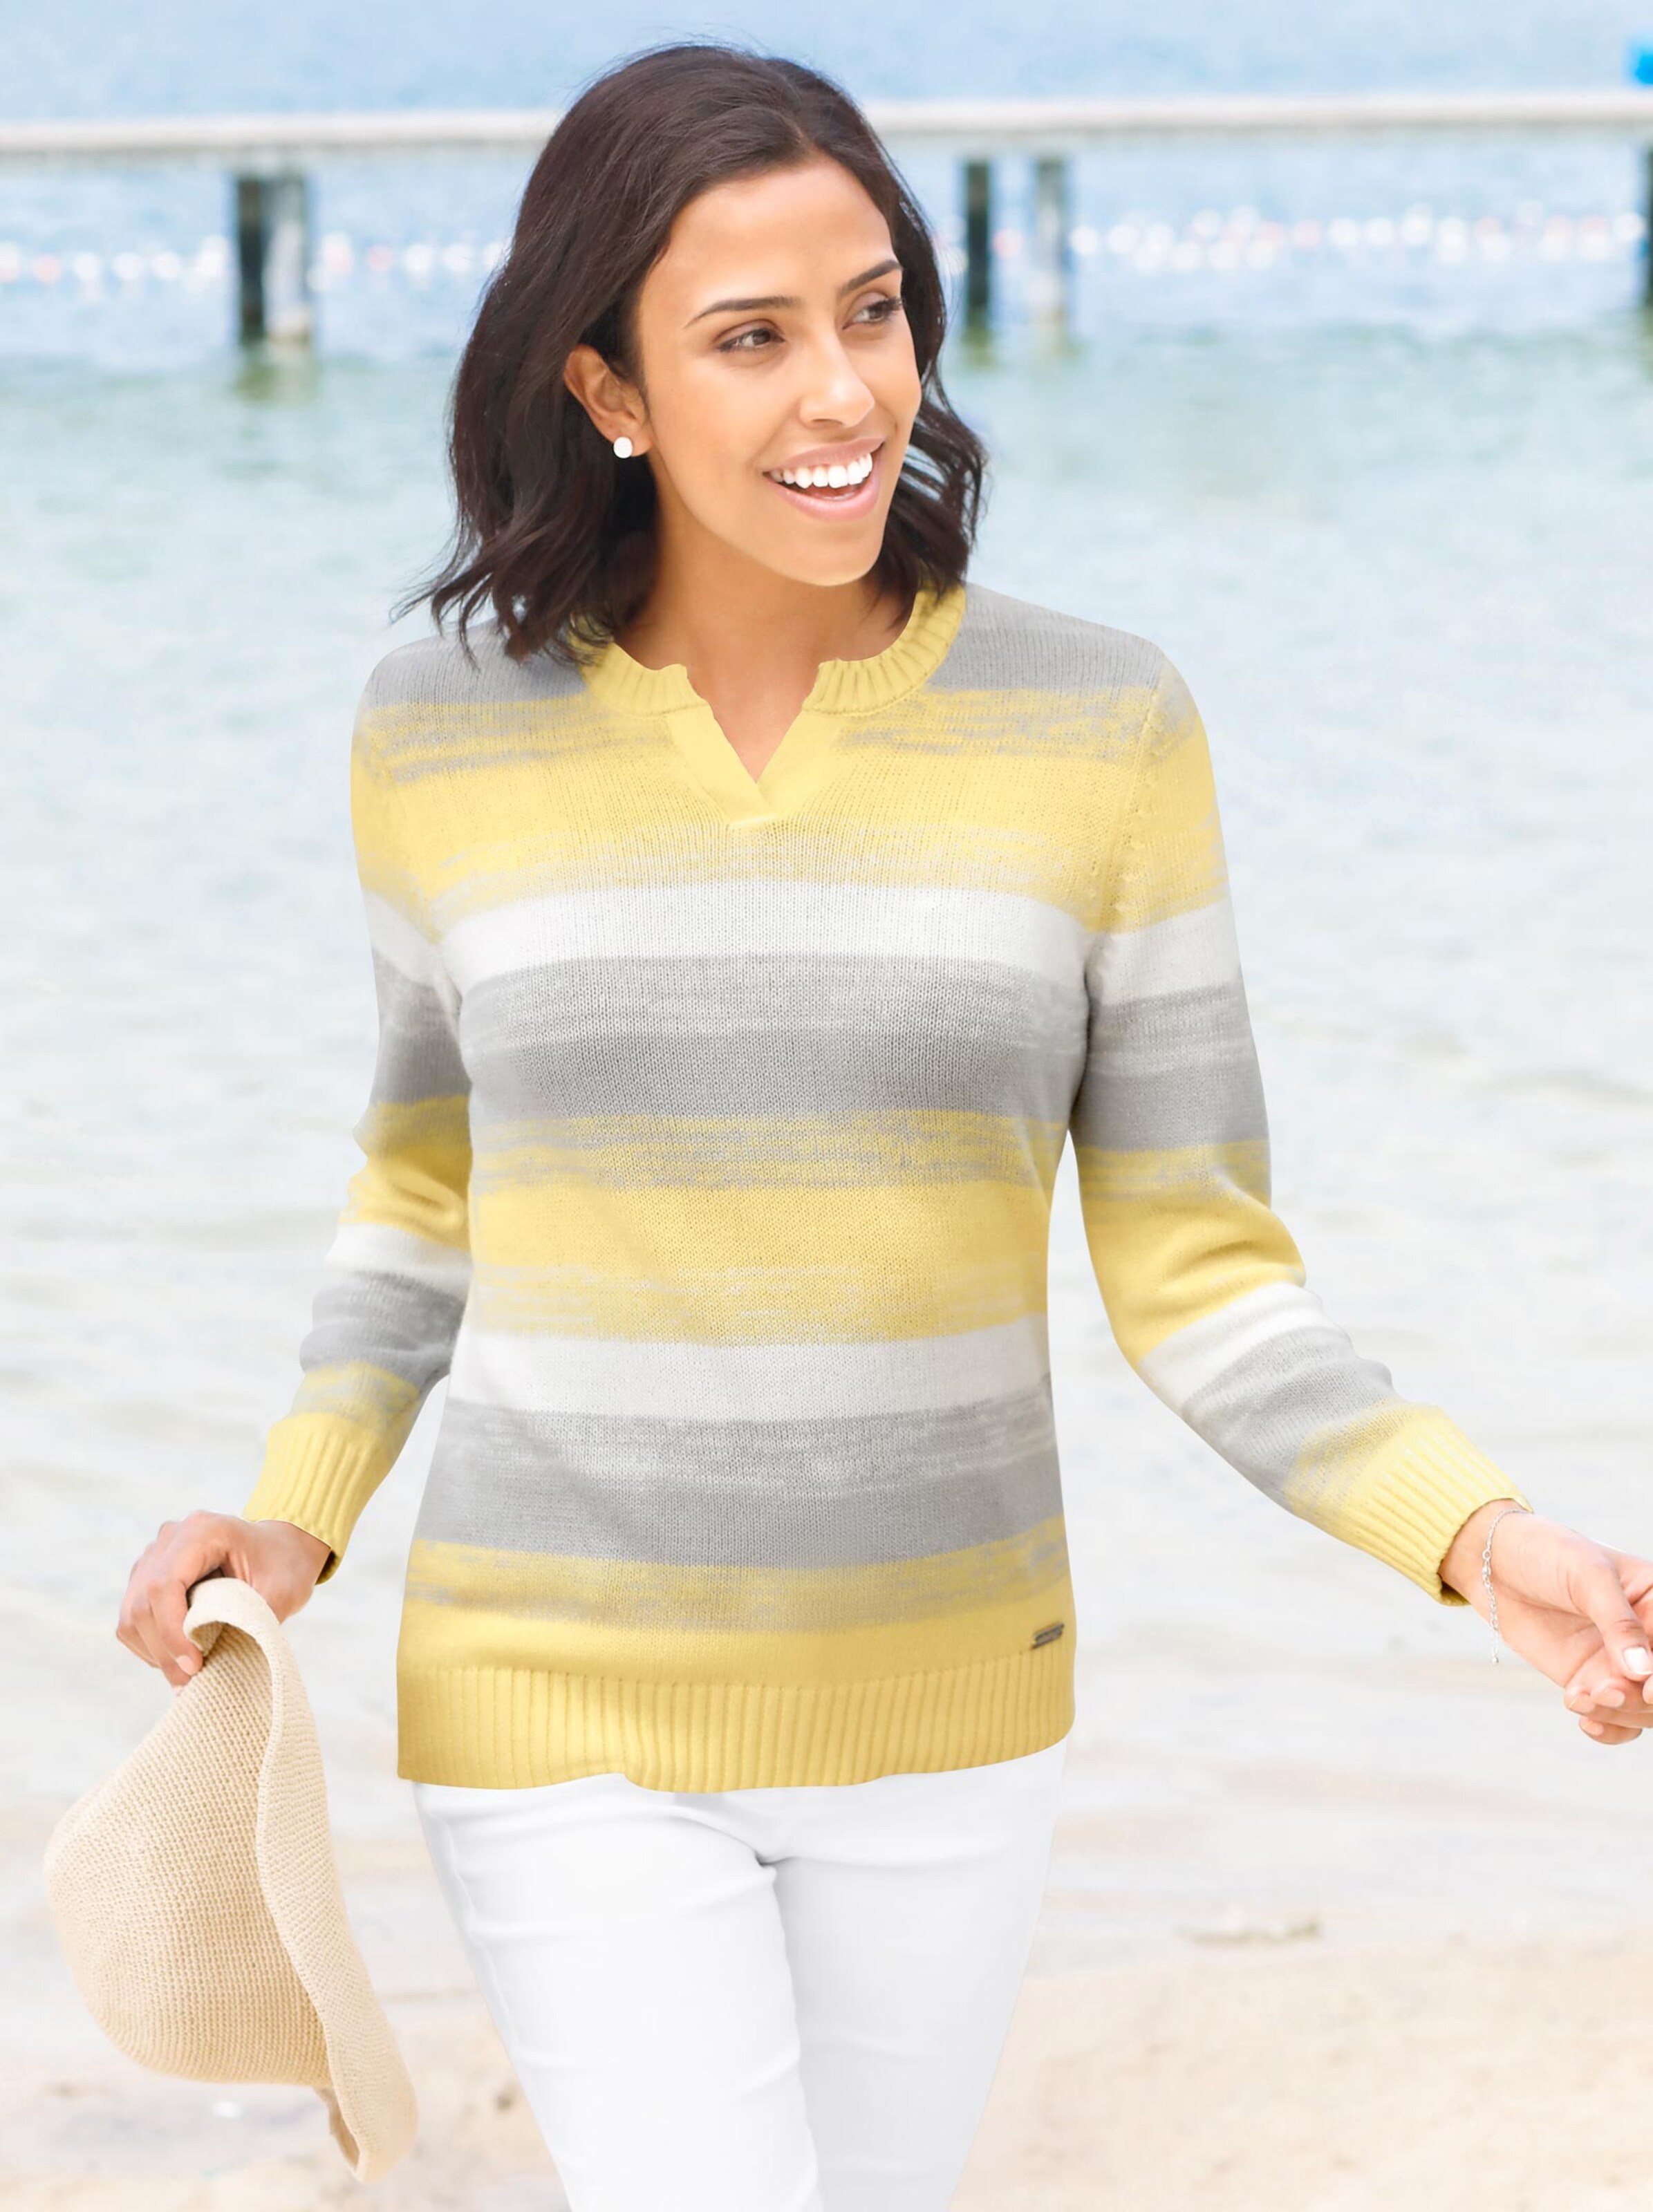 Damenmode Pullover Streifenpullover in gelb-grau-gestreift 